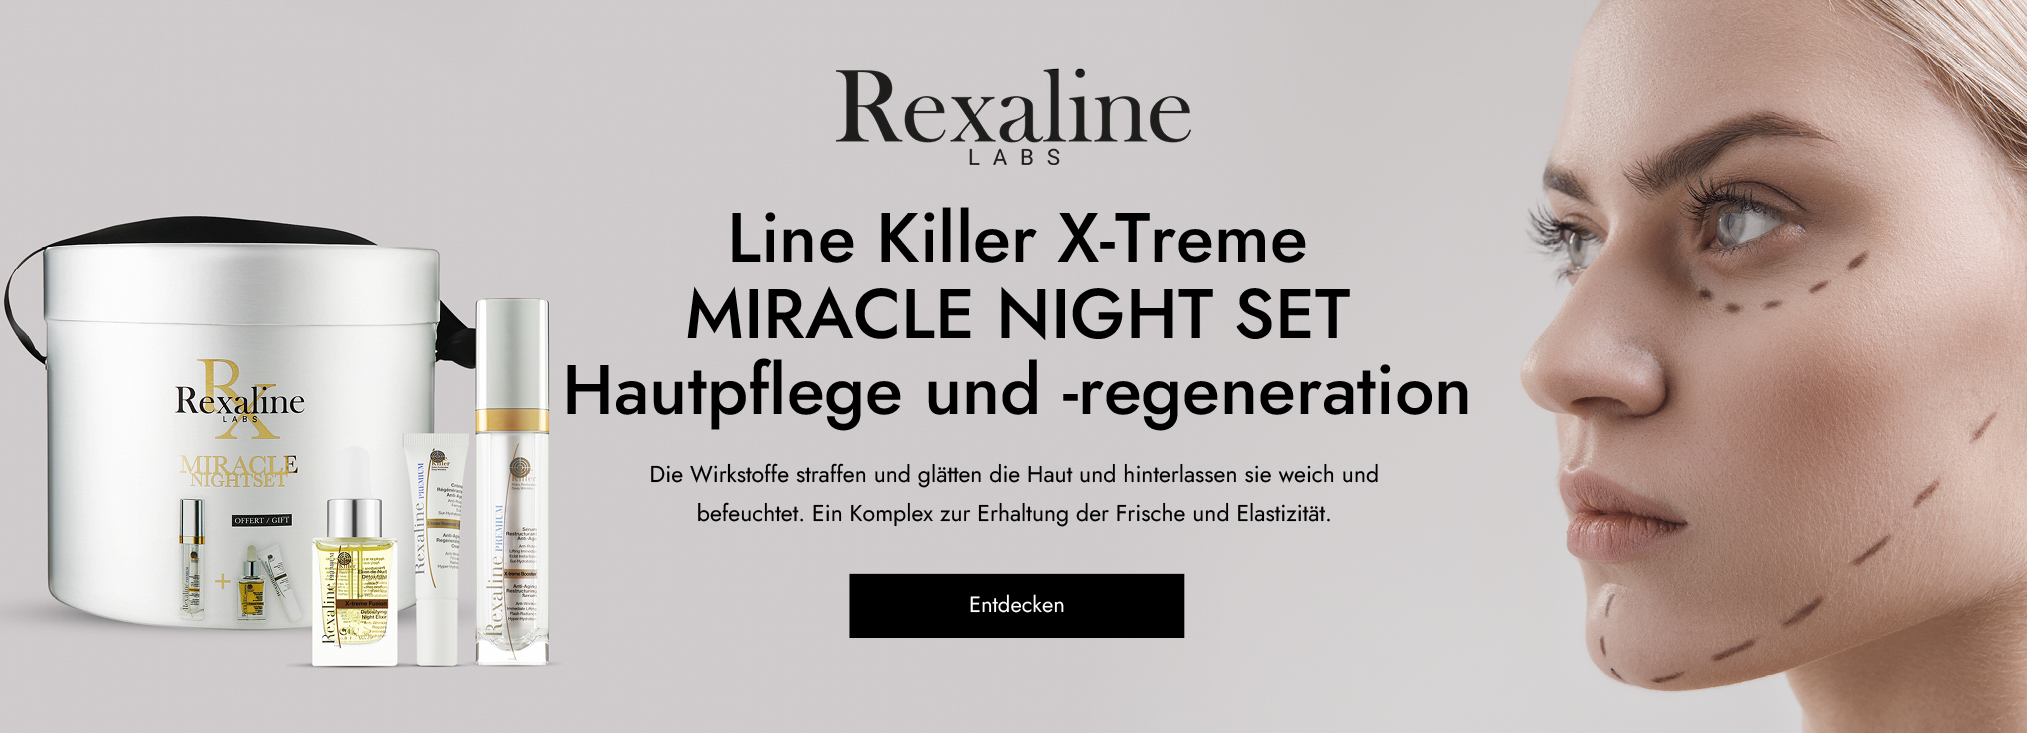 Rexaline_anti-age